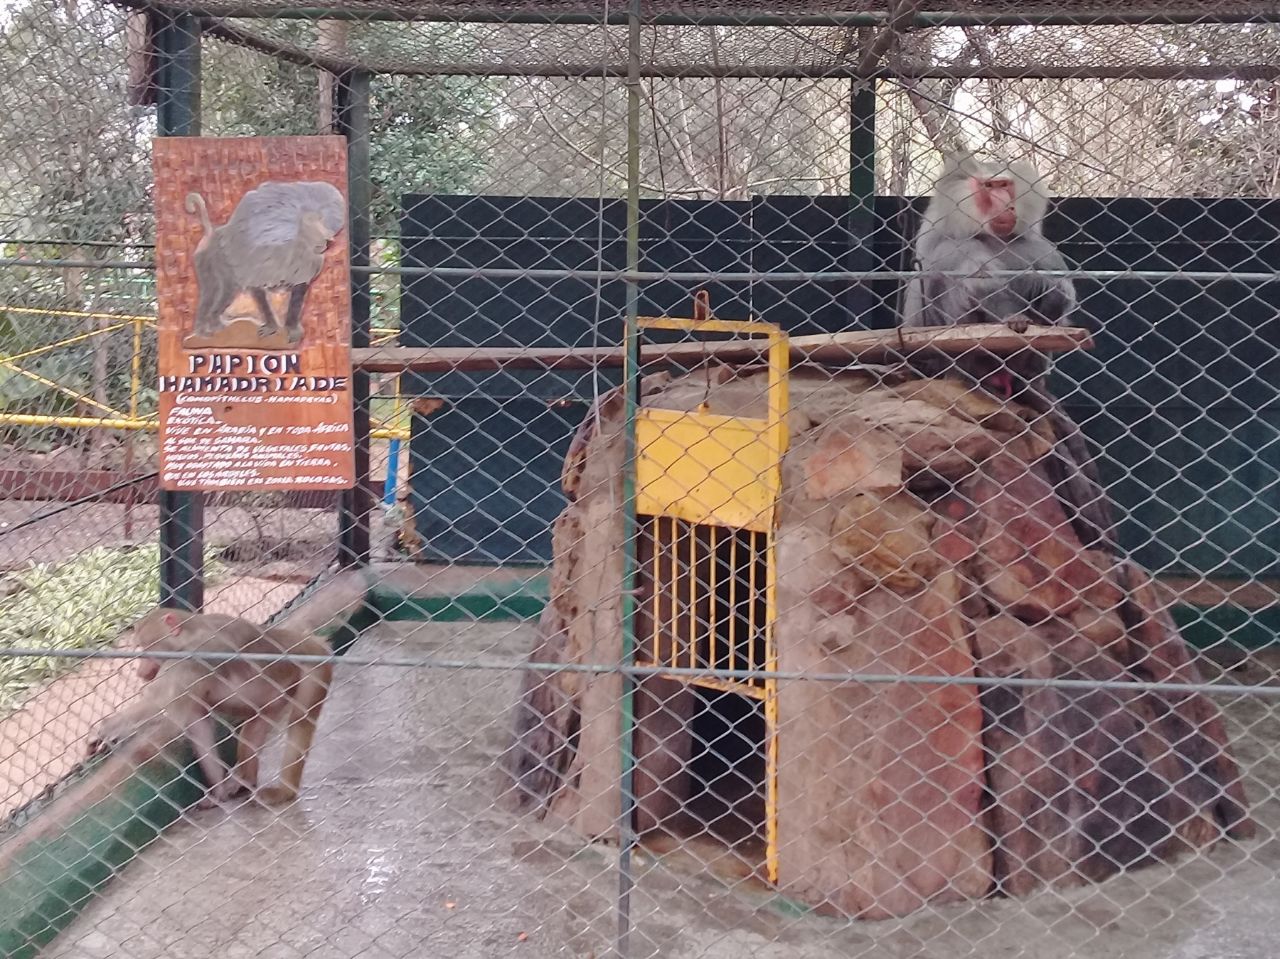 Муниципальный зоопарк Сальто, Уругвай